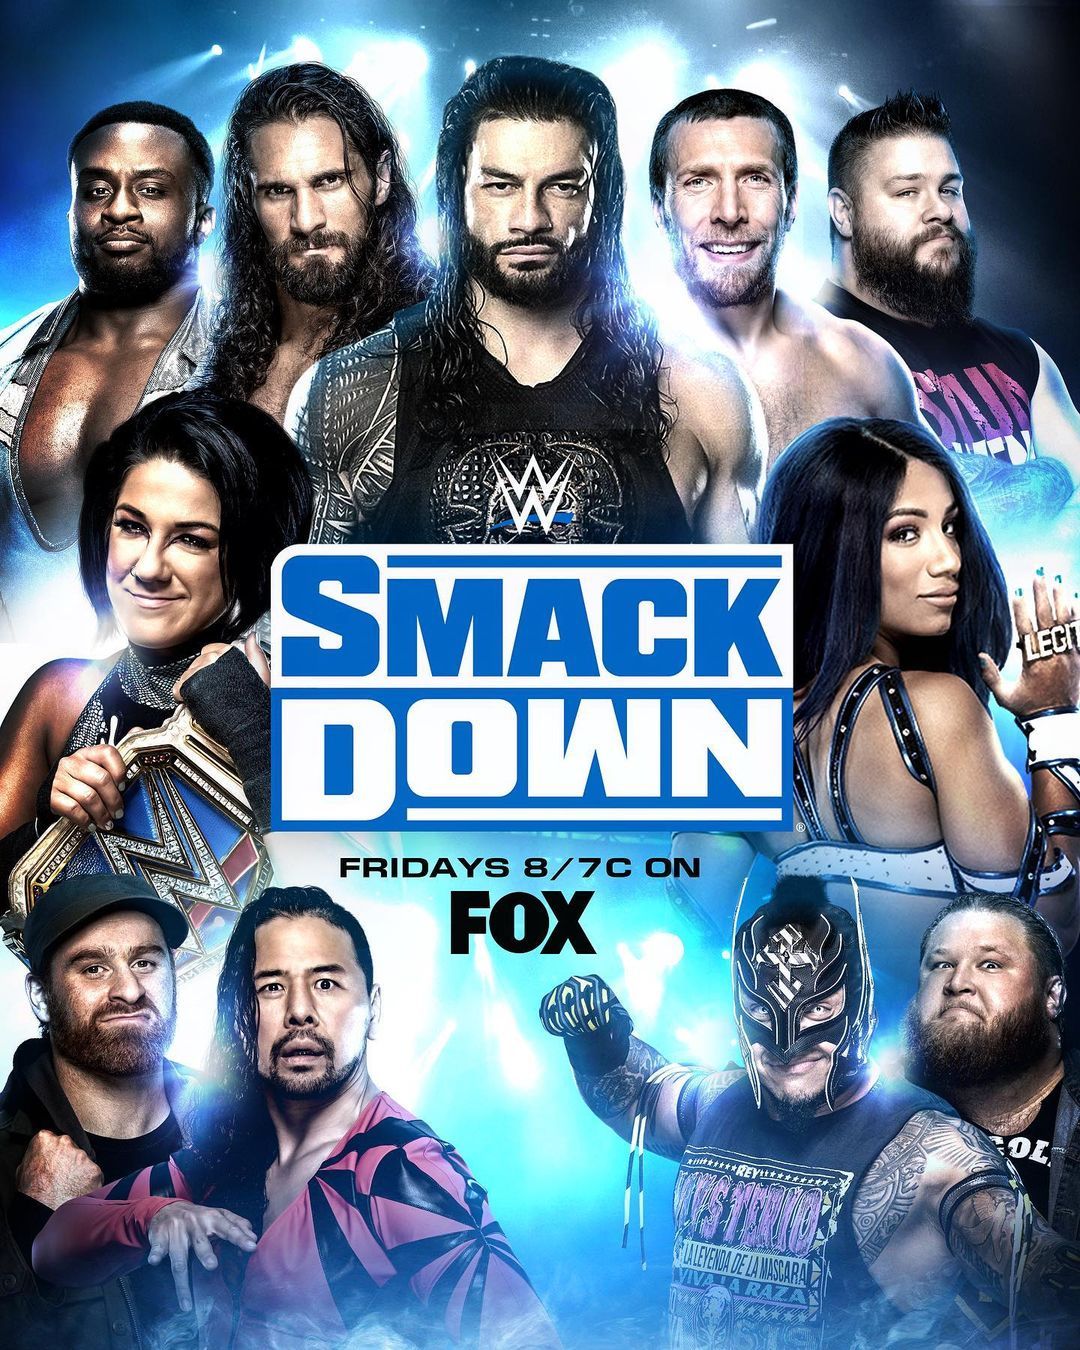 WWE Friday Night SmackDown (3 May 2024) English 720p | 480p HDRip Download